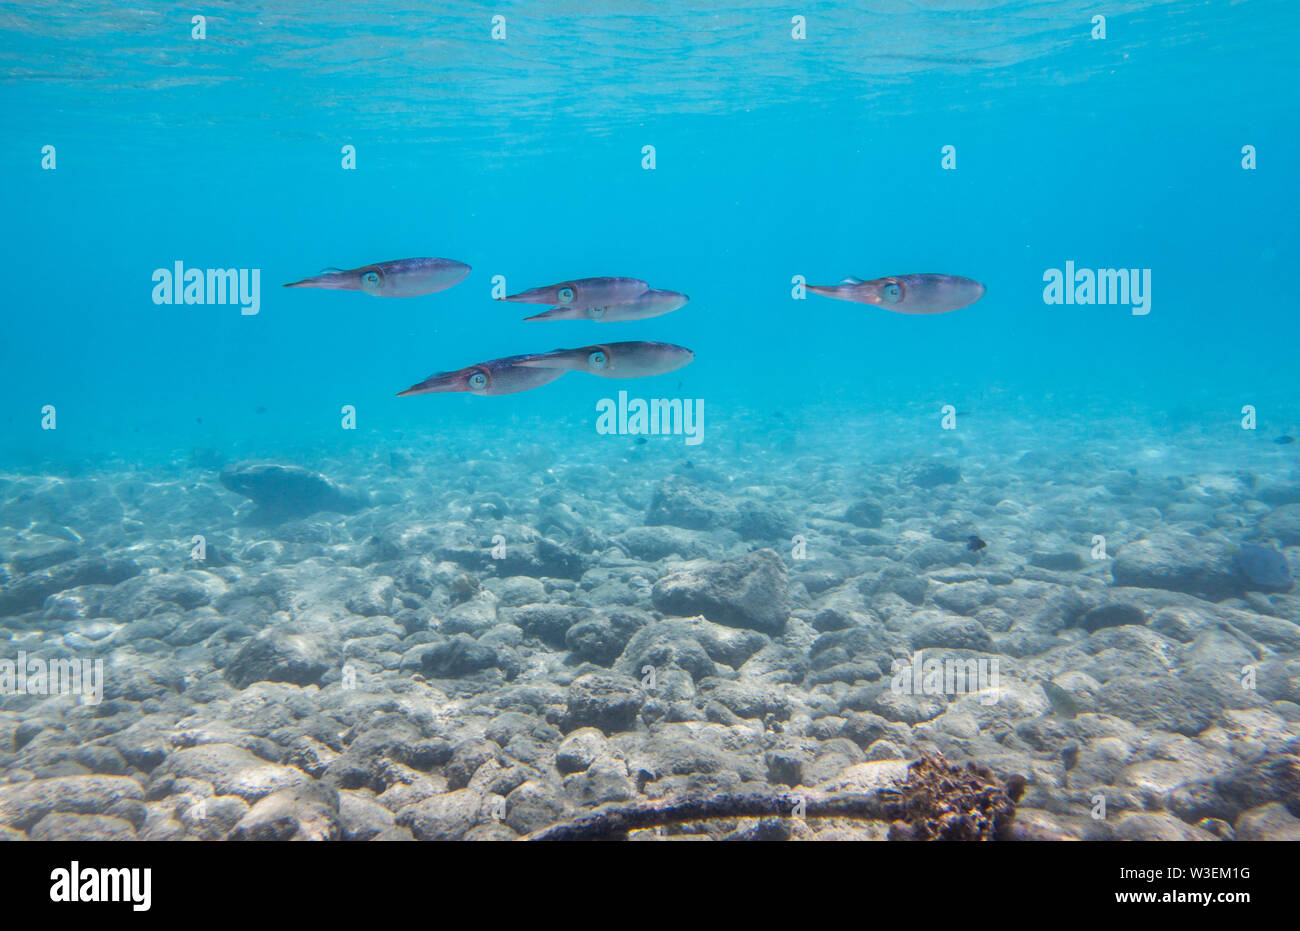 Calamares de coral en el Mar Caribe Foto de stock